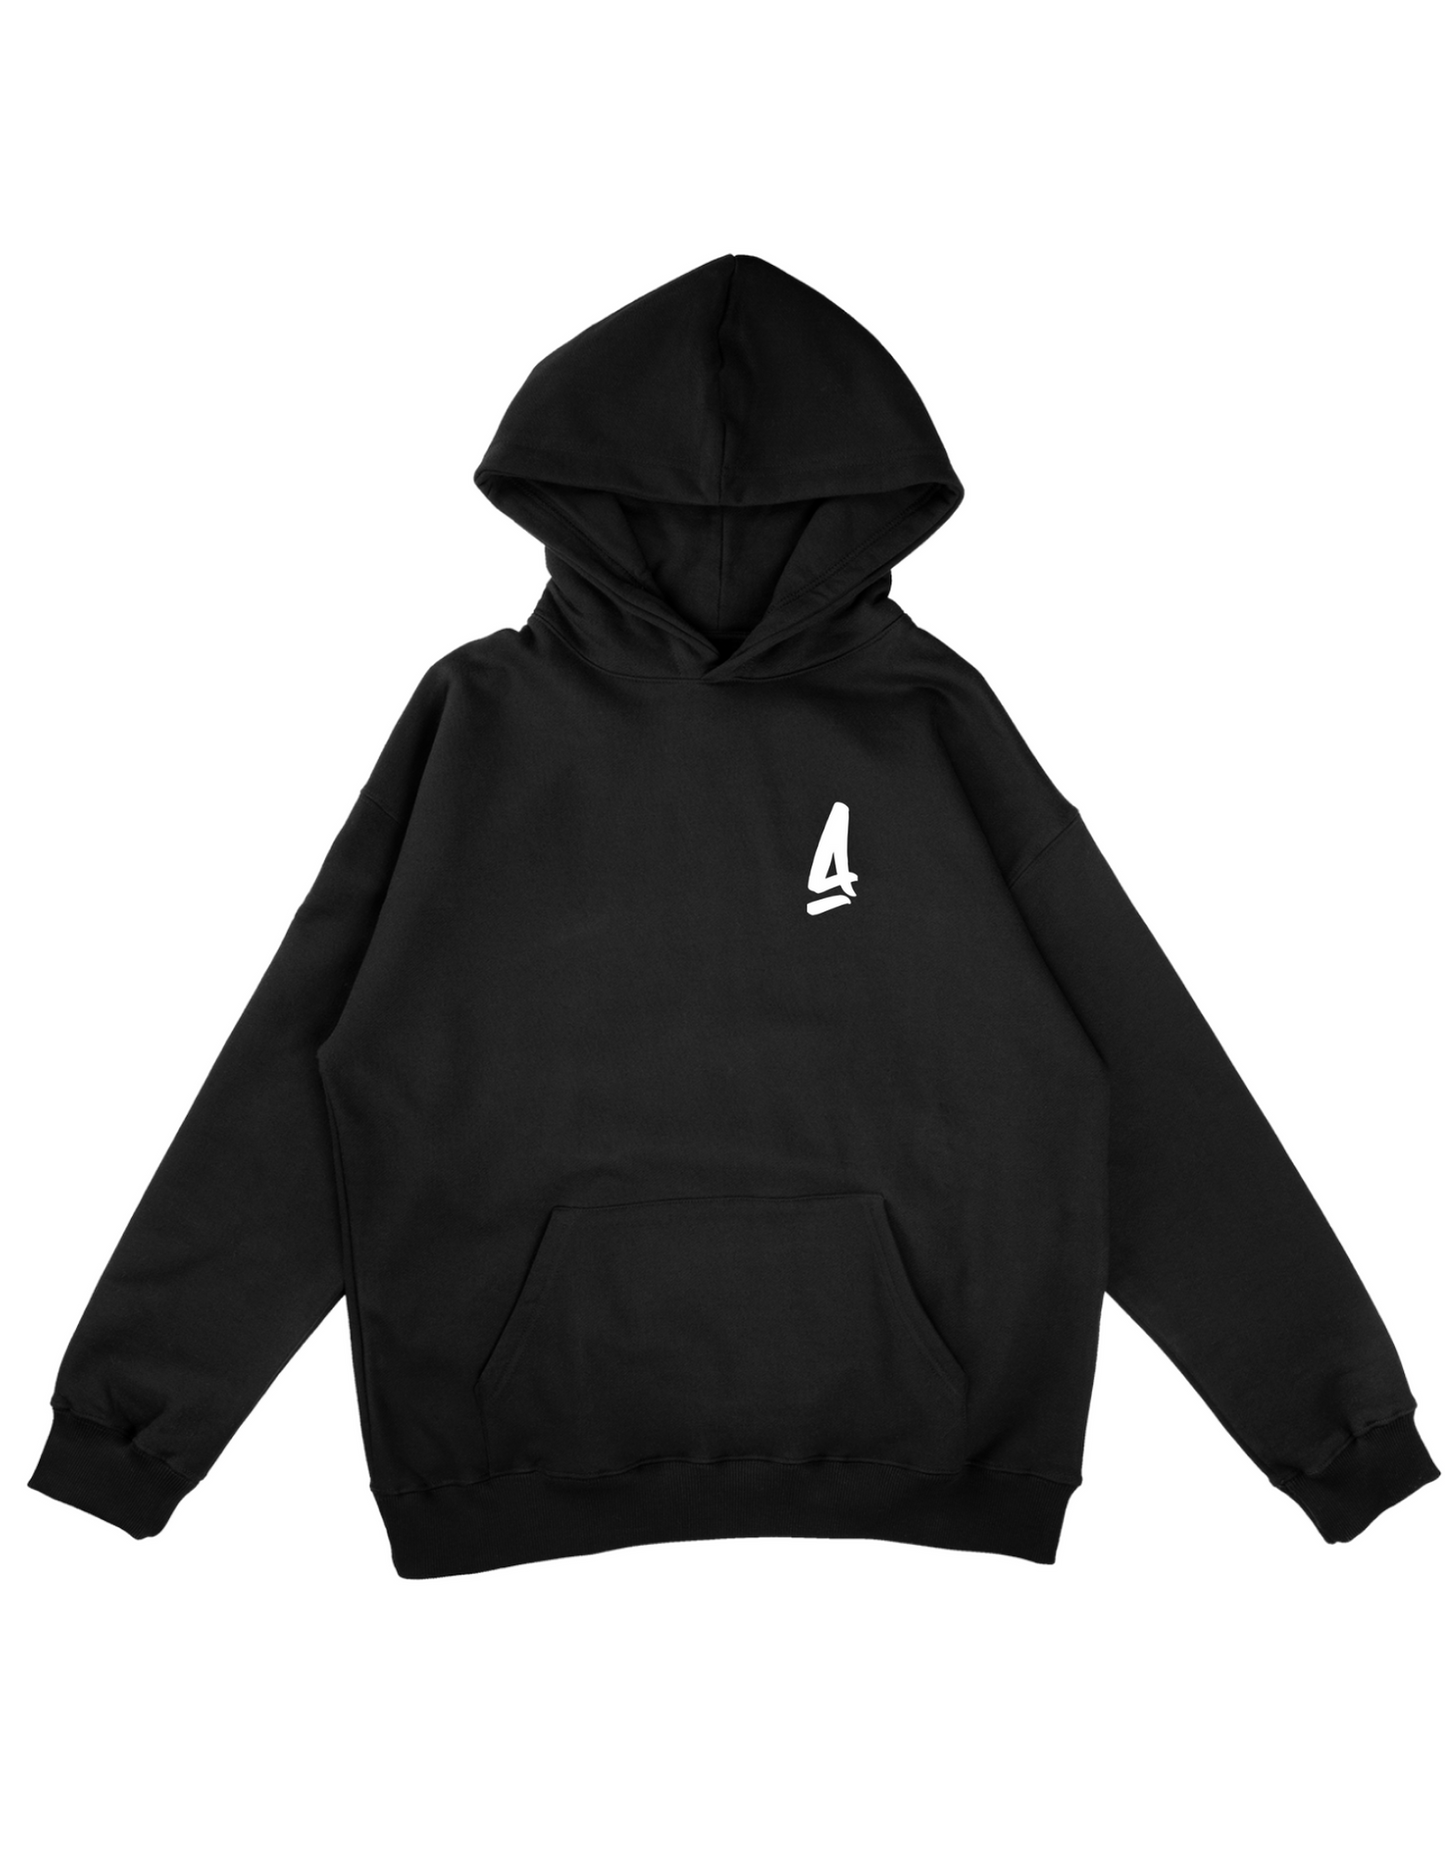 SAKYI - Plain hoodie